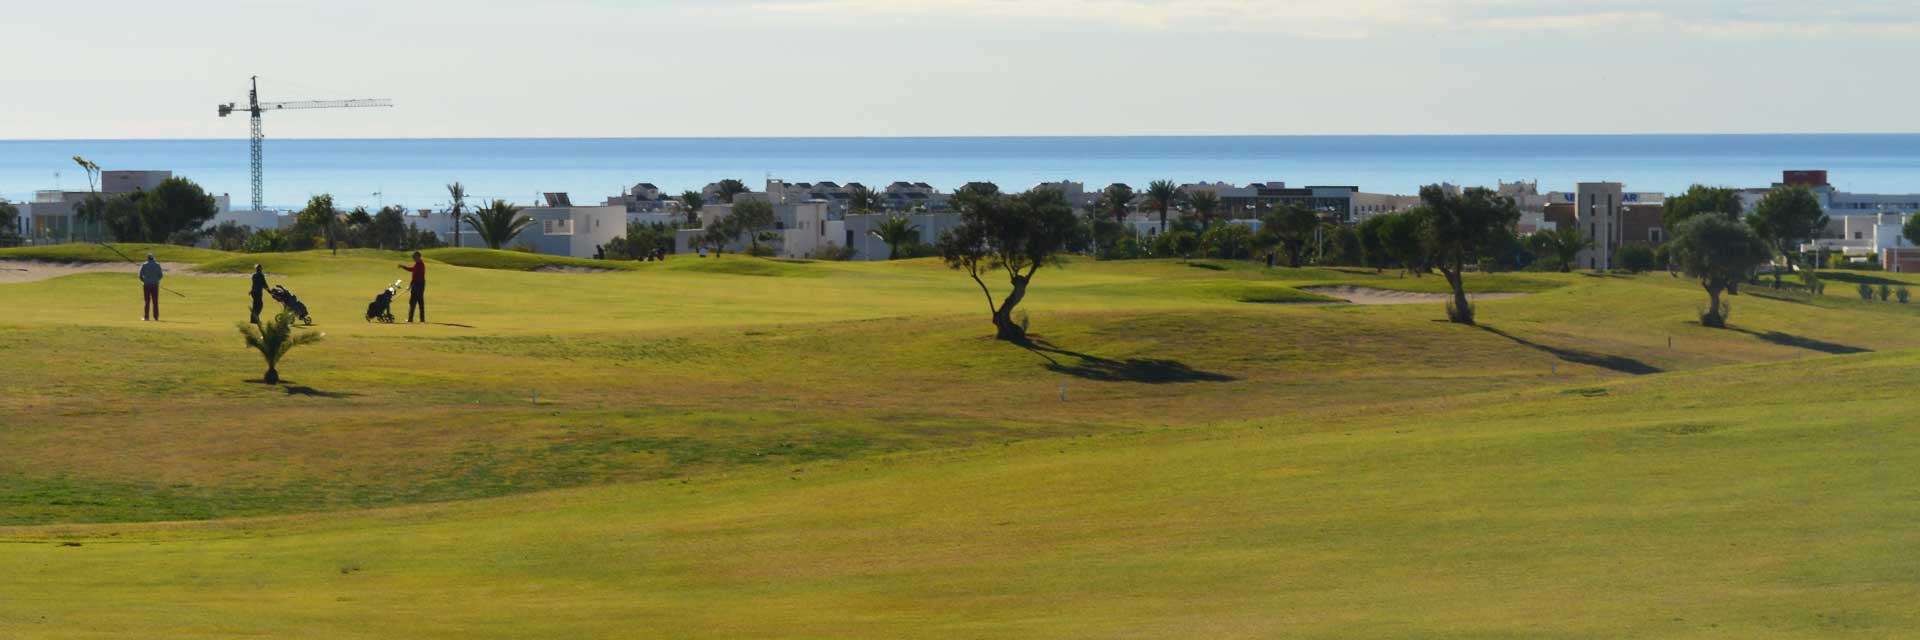 Campo de Golf El Toyo ▶ Costa de Almería